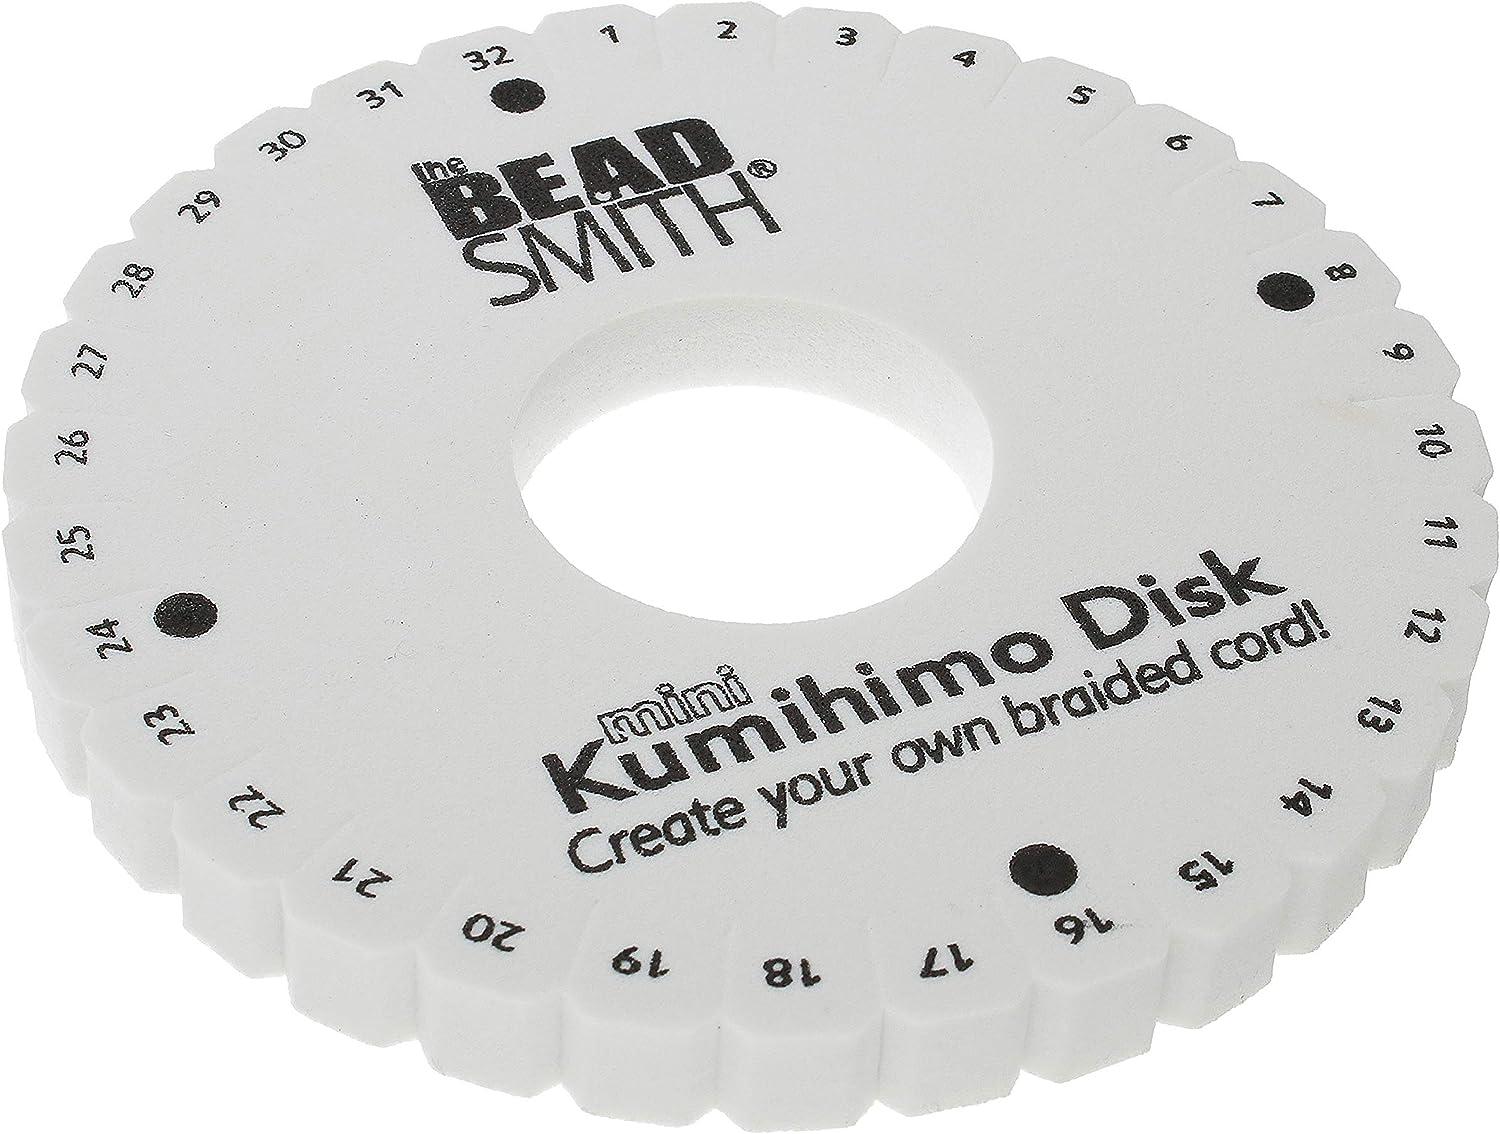 Kumihimo Disk- 64 Slot 